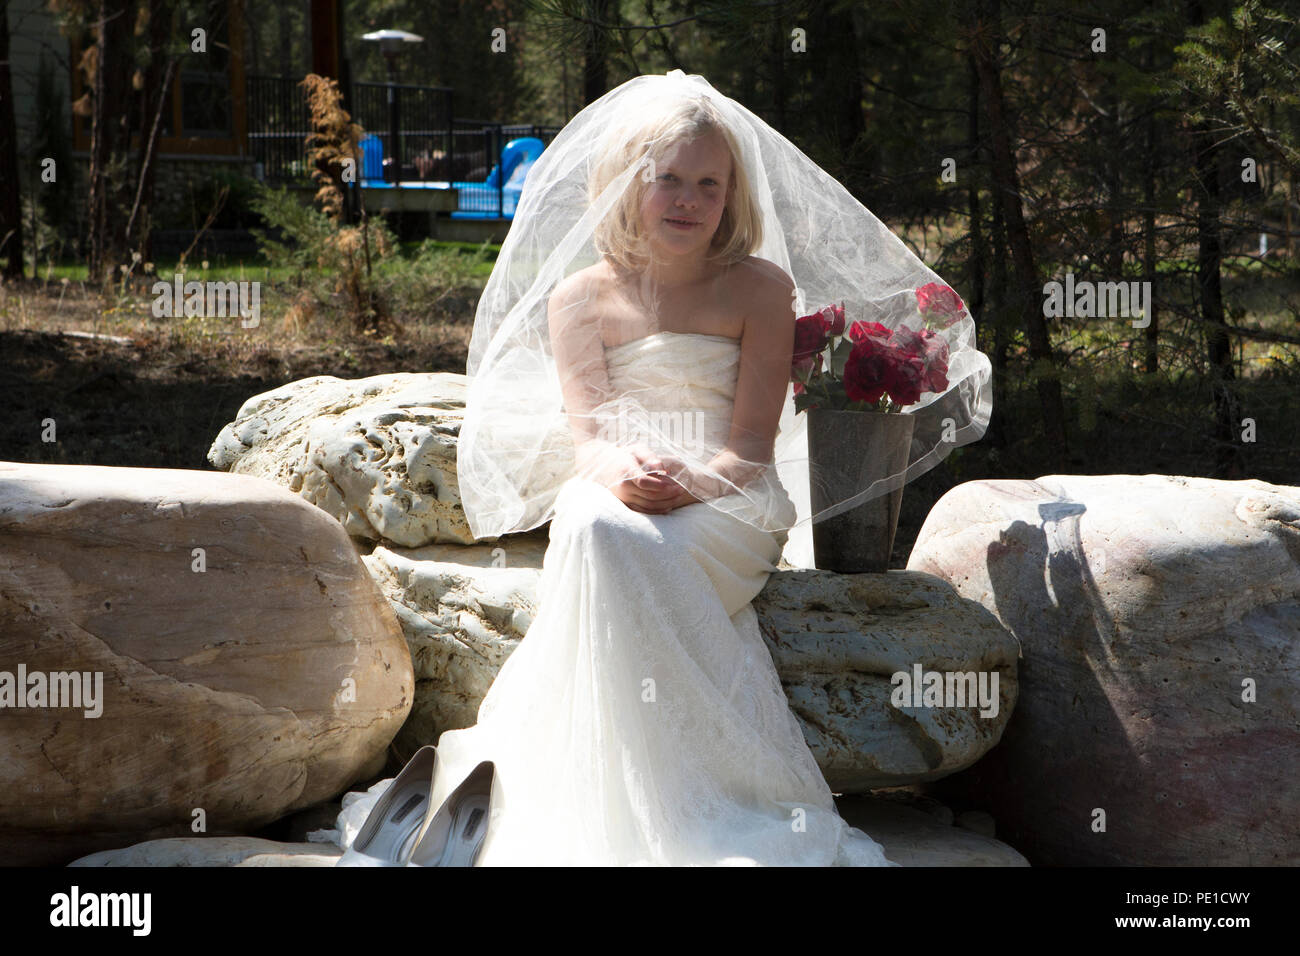 Fantasia, 8-9 anno attractie bionda, indossando zia di abito da sposa & velo. Seduti all'aperto sulla grande roccia accanto al vaso di rose rosse. Foto Stock